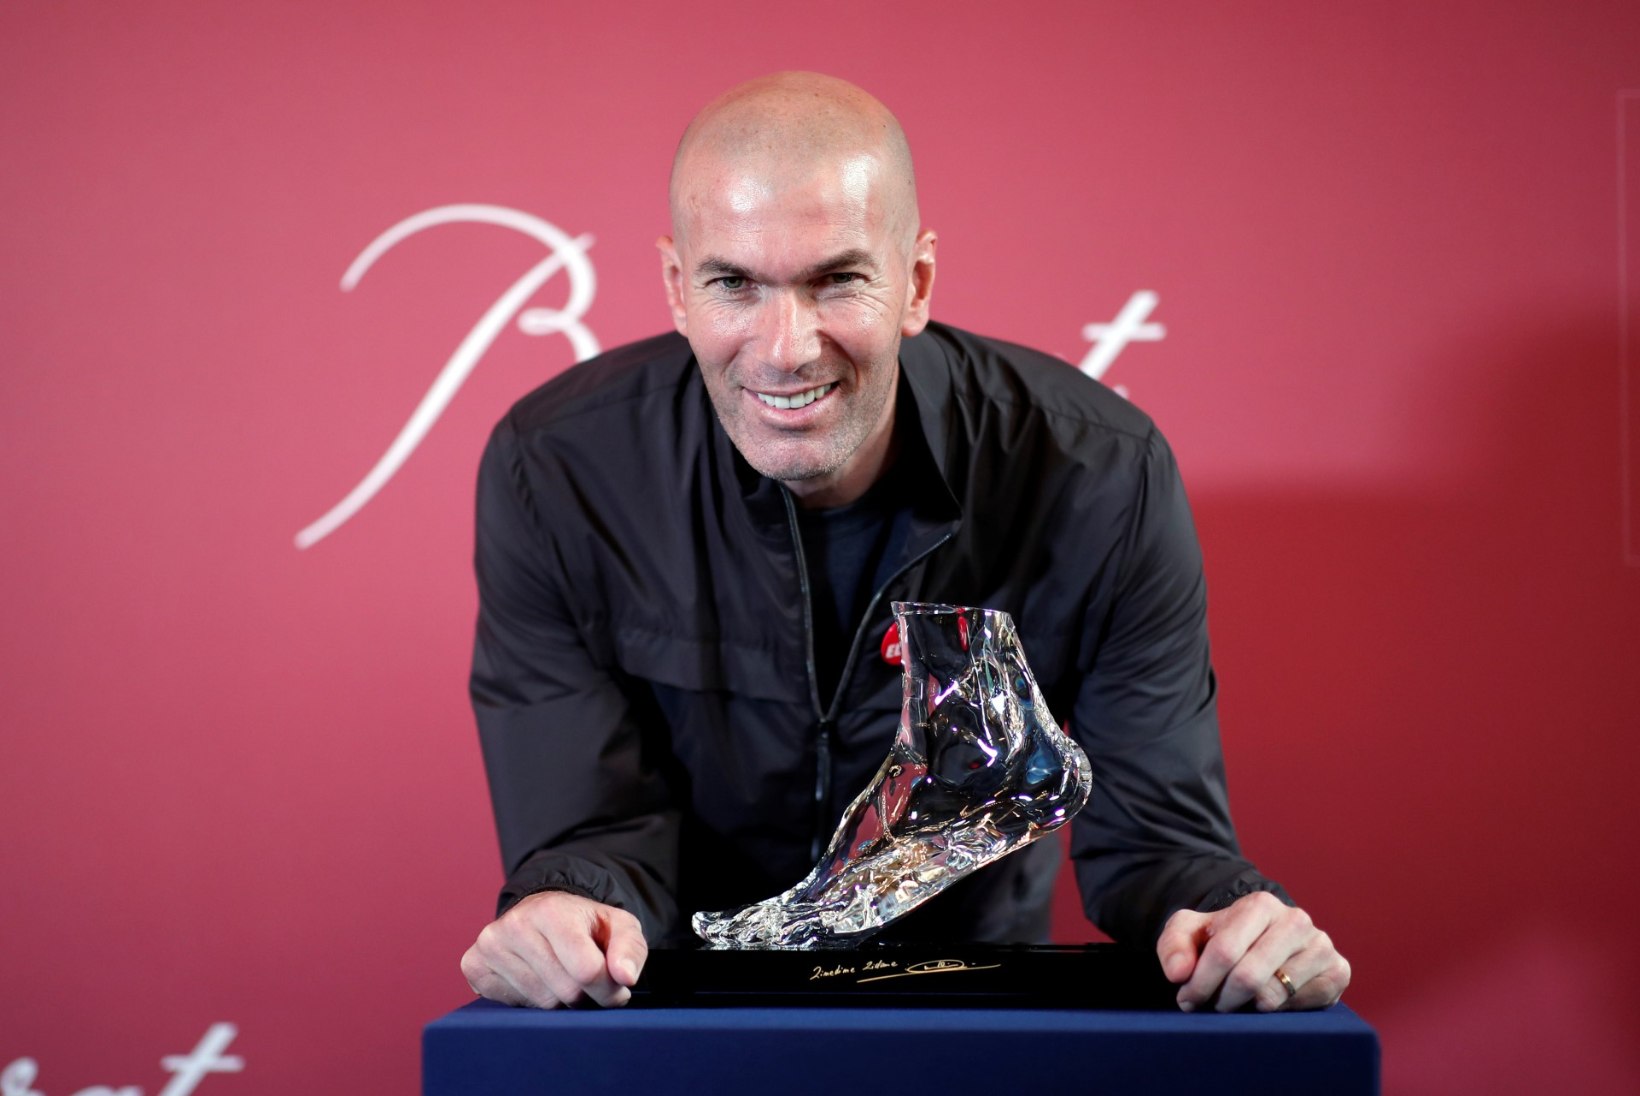 Briti meedia: Zidane tuleb Manchesteri ja toob endaga neli tähtmängijat